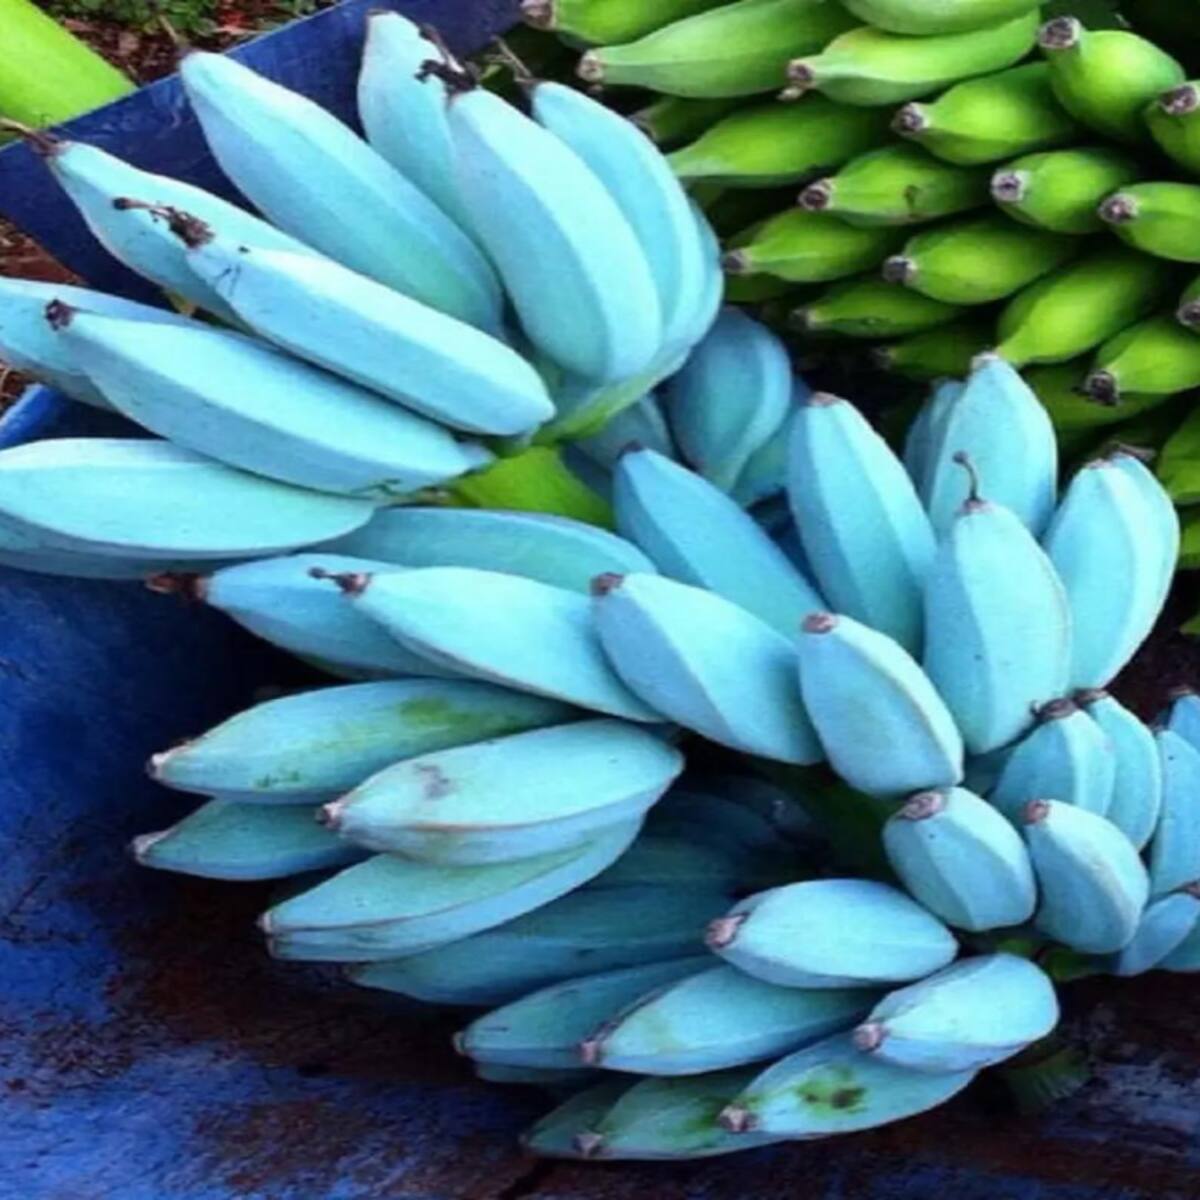 Banana variety-Blue Java. Advantages and disadvantages